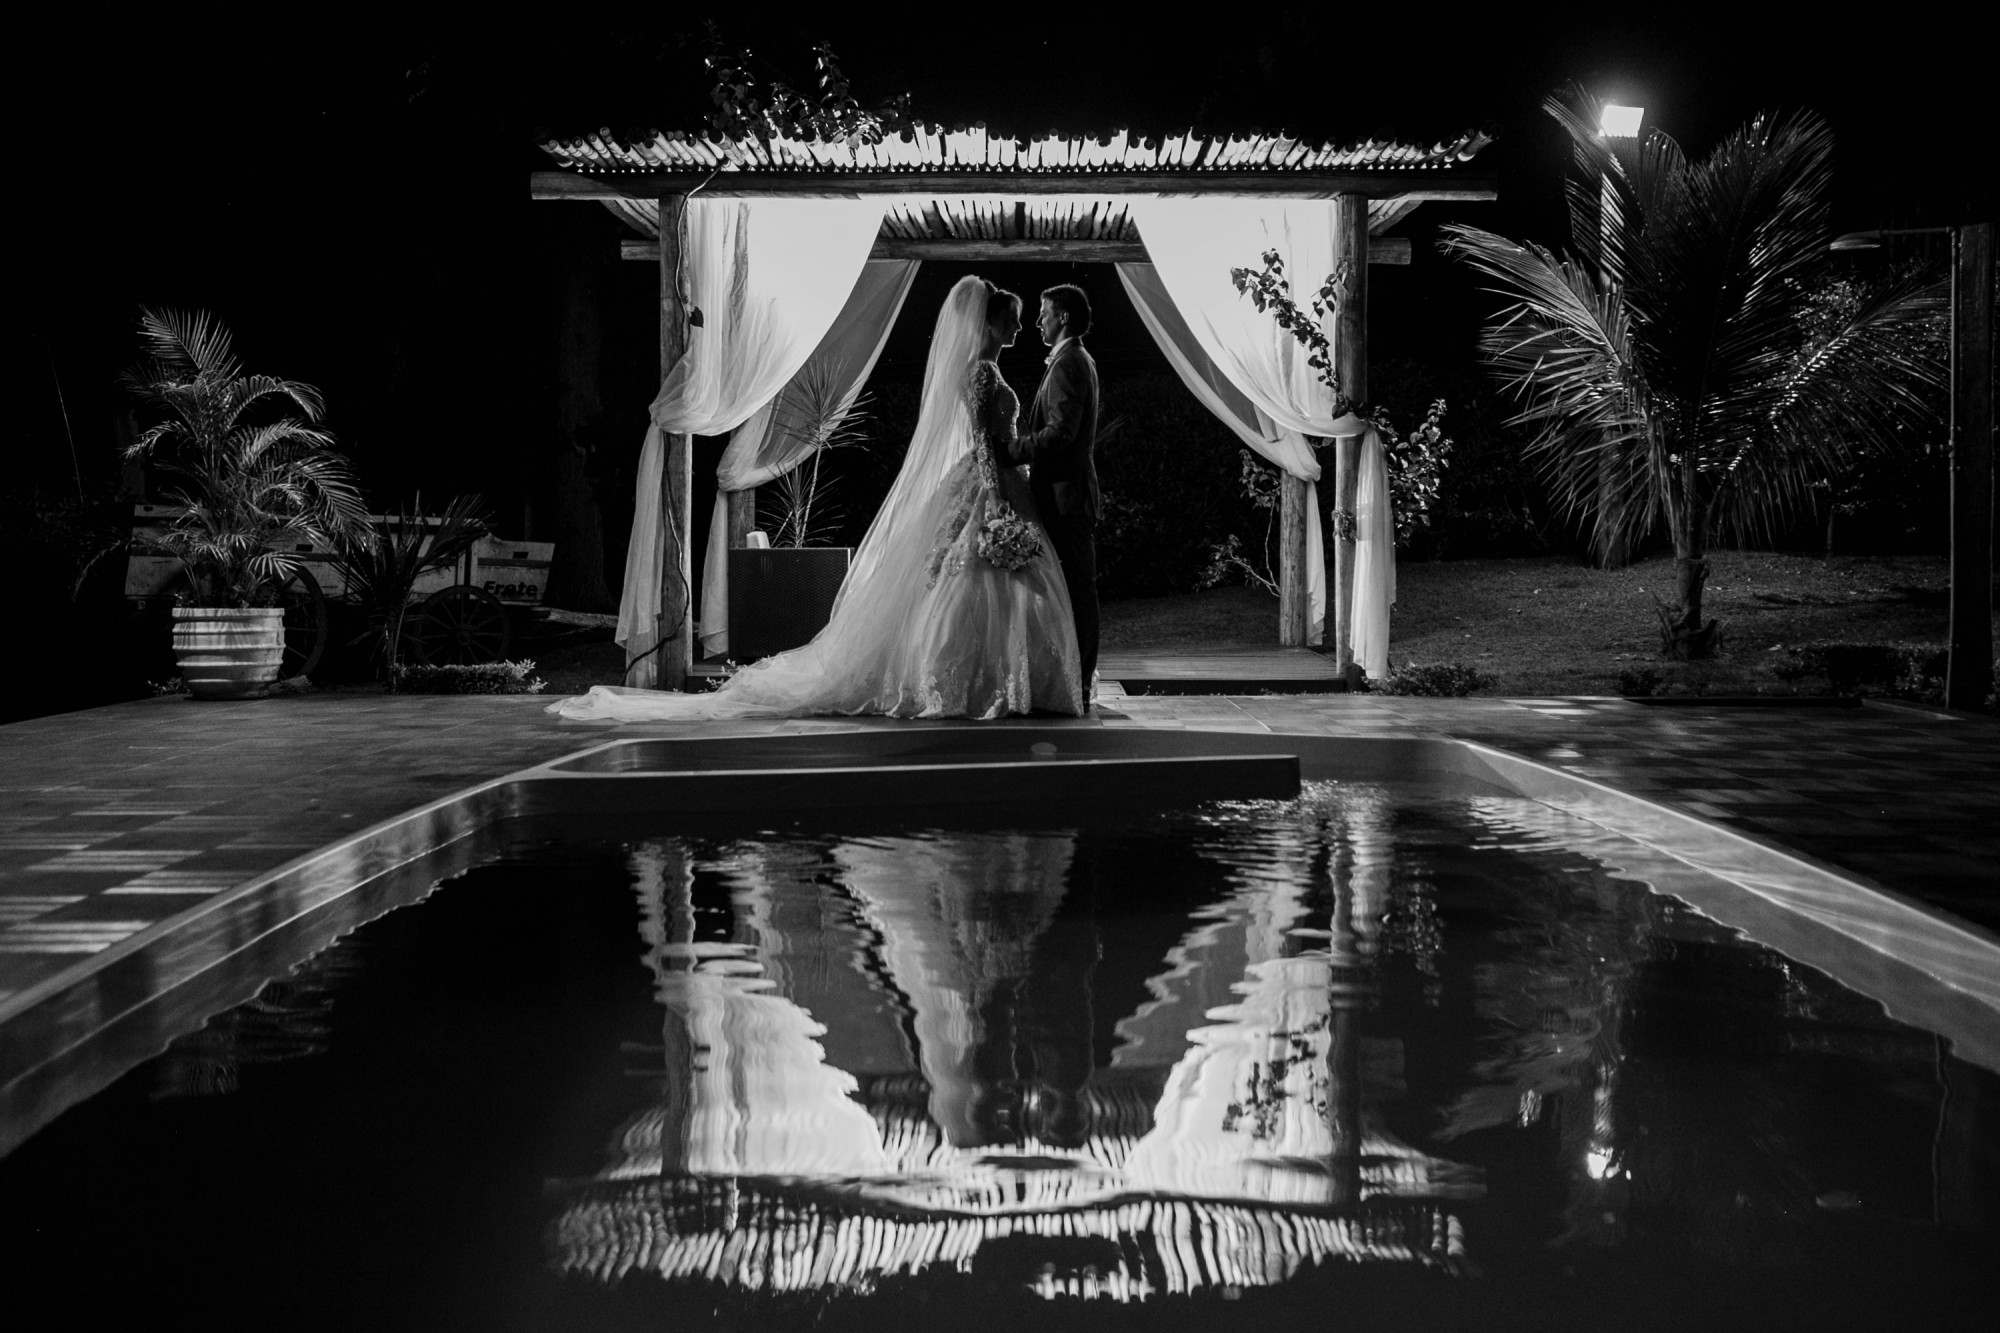 Casamento Anderson e Juliana Fioreli em Iporã Paraná - por Lorran Souza e Léia Sotile - Fotografos de casamentos - JA-2143